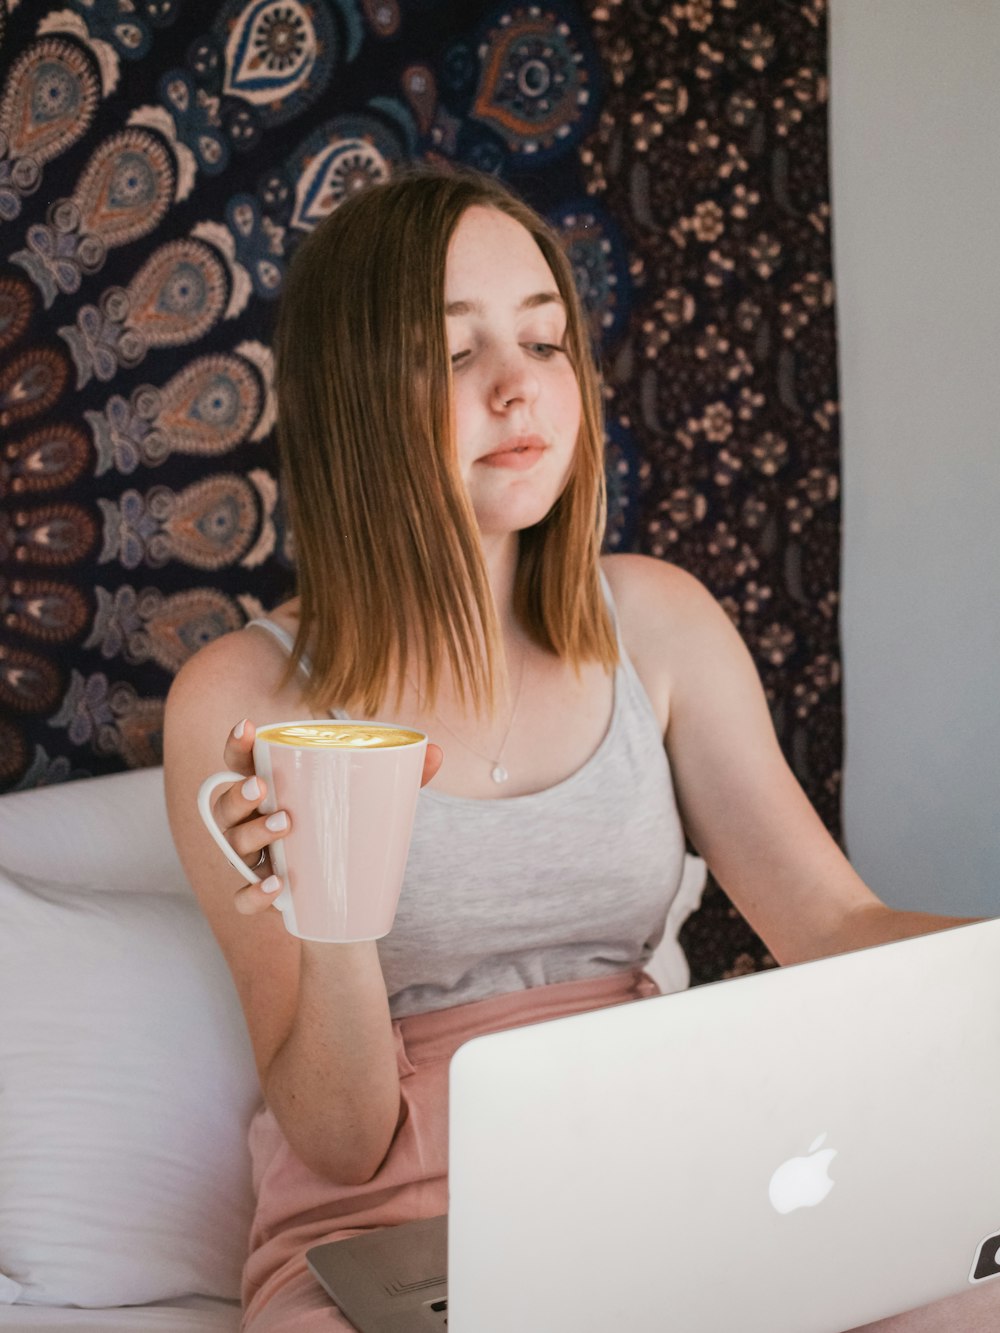 MacBookを使用し、ベッドに座っているときにマグカップを持っている女性